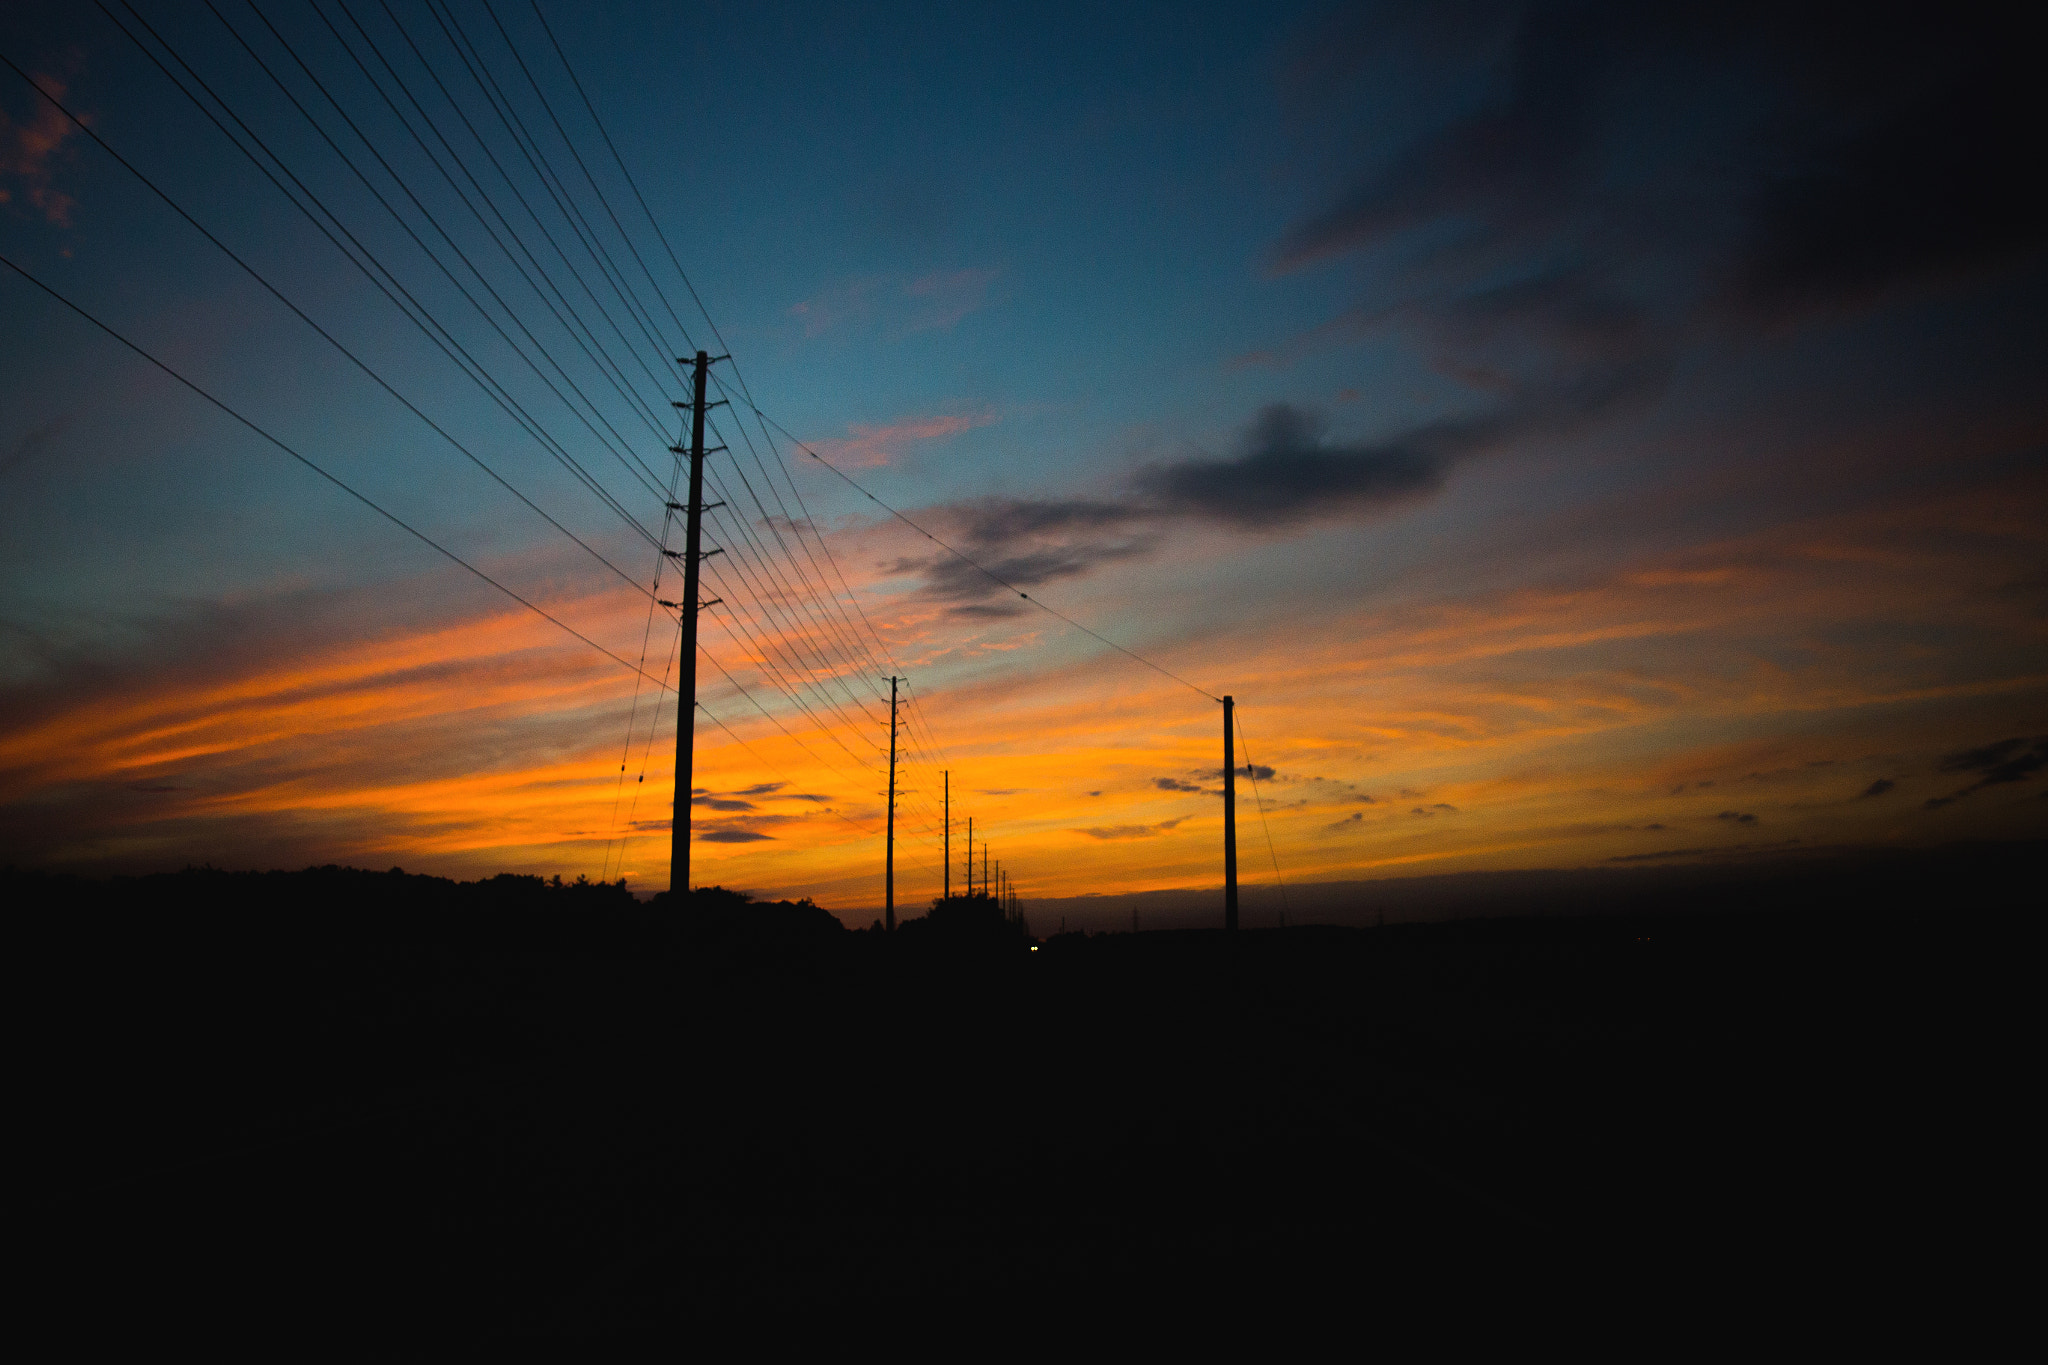 Canon EOS 6D sample photo. The dusk photography